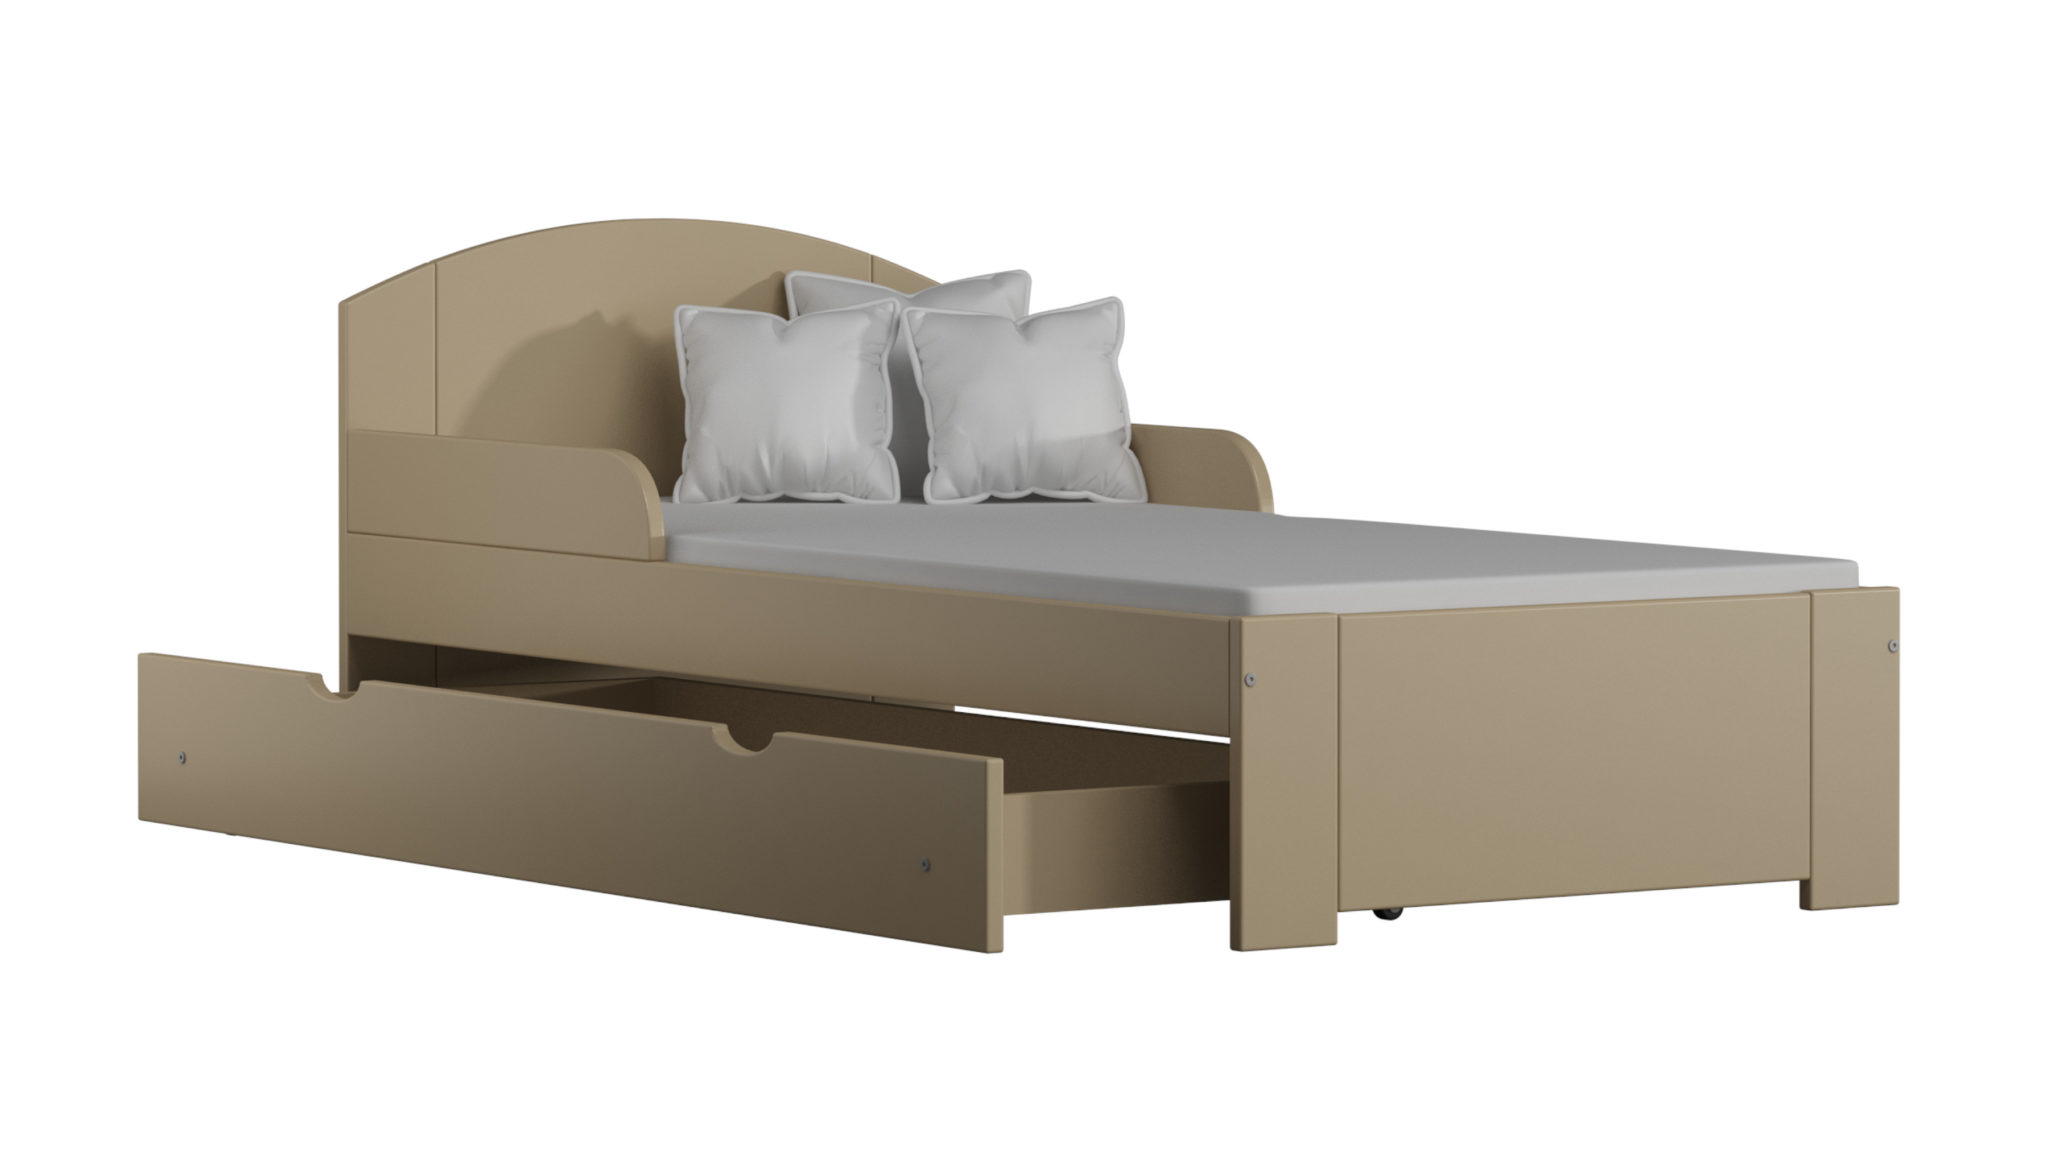 Detská posteľ Bili S 160x80 10 farebných variantov !!!